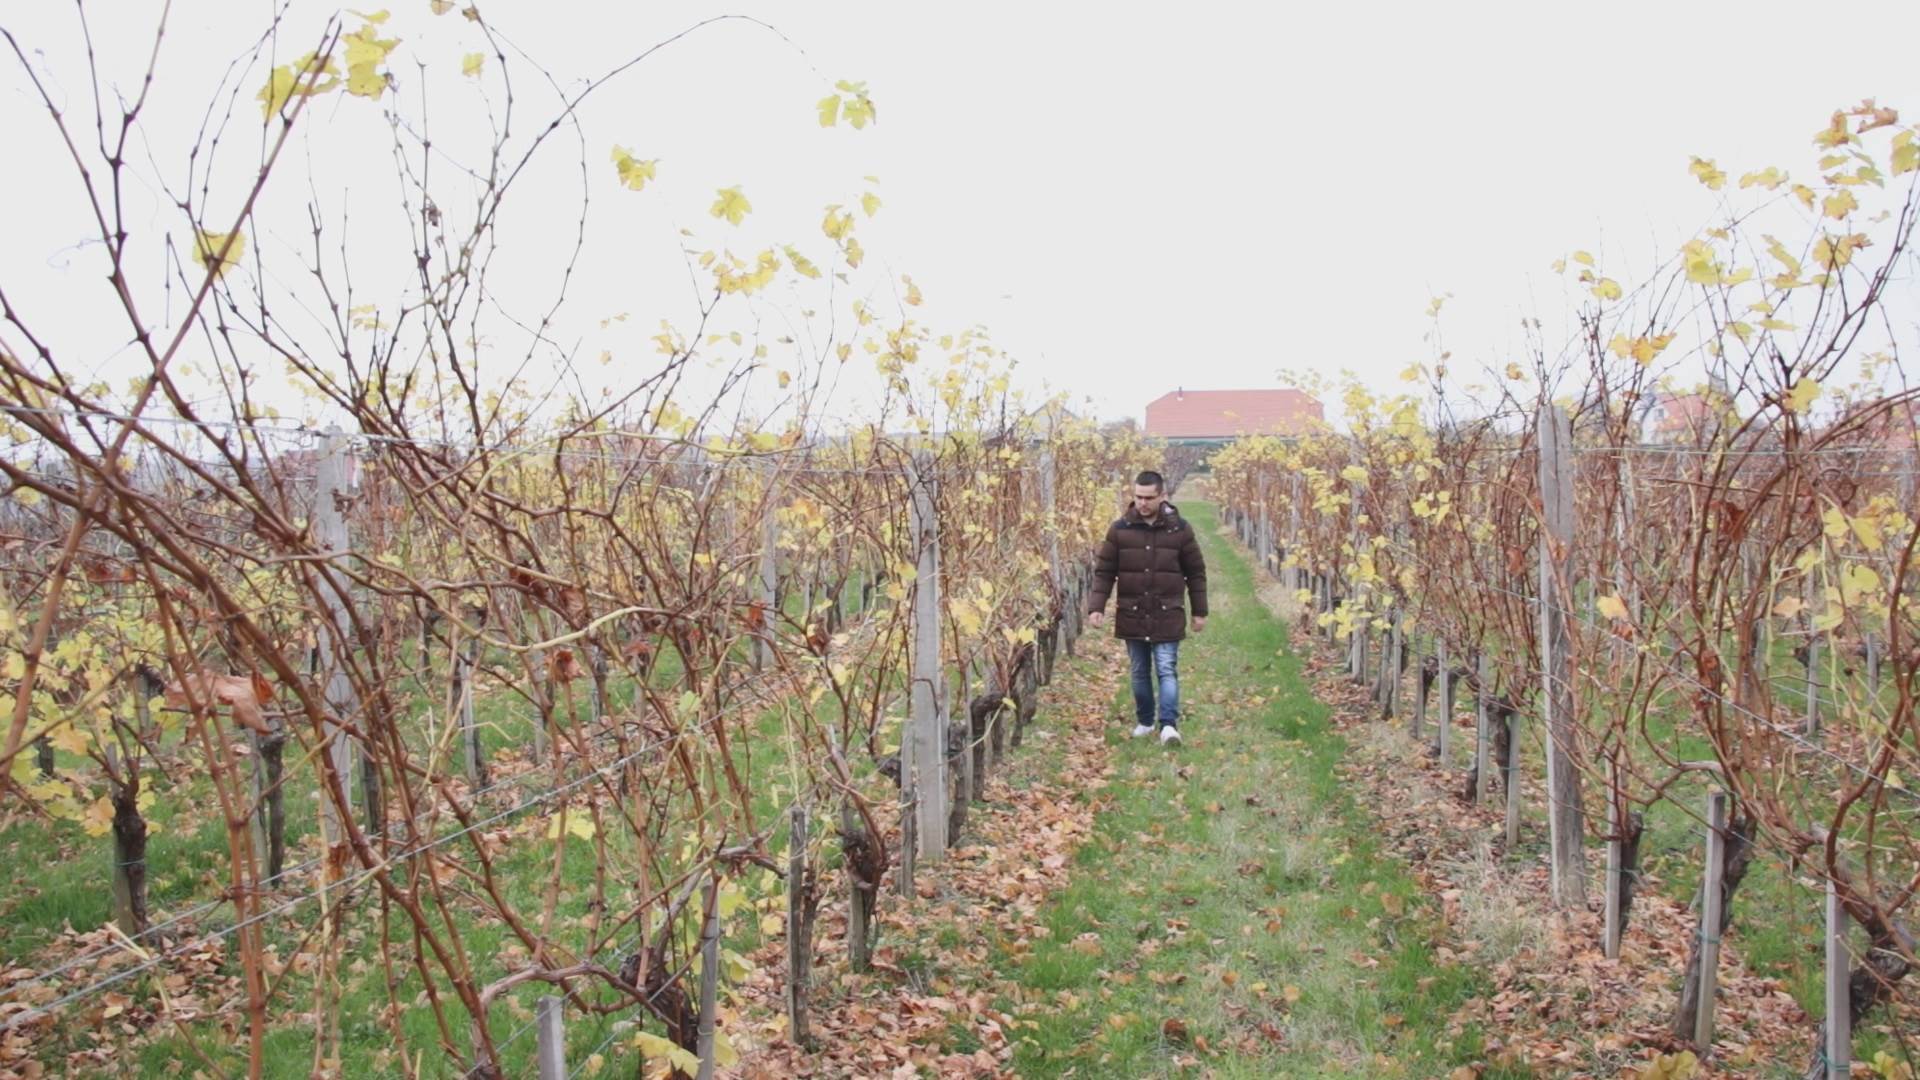  zarada u srbiji vinograd topola vinogradarstvo posao zarada 